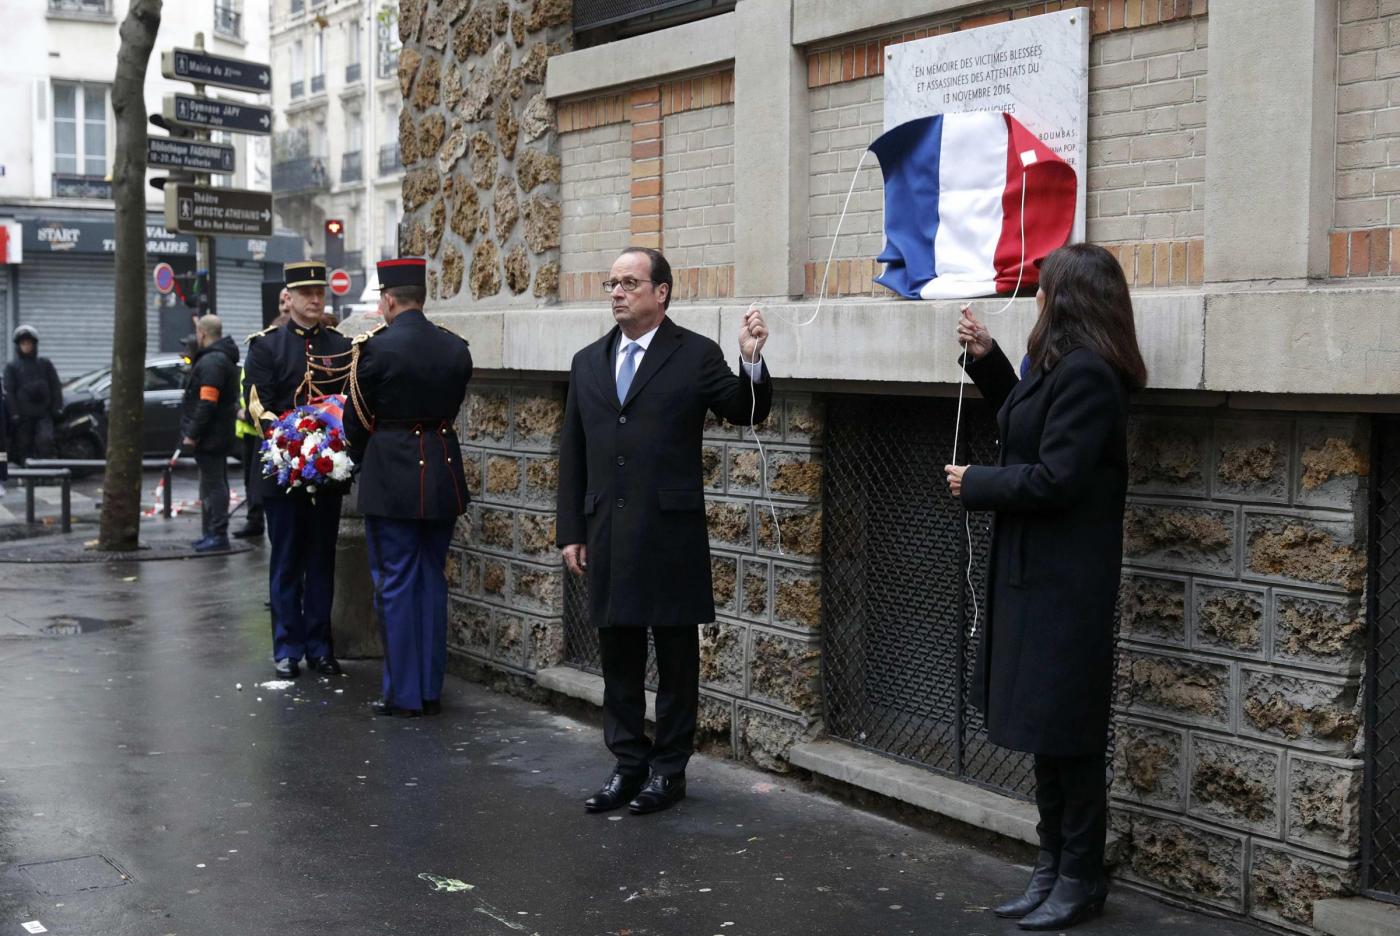 Parigi un anno dopo: la Francia si ferma per ricordare le stragi terroristiche